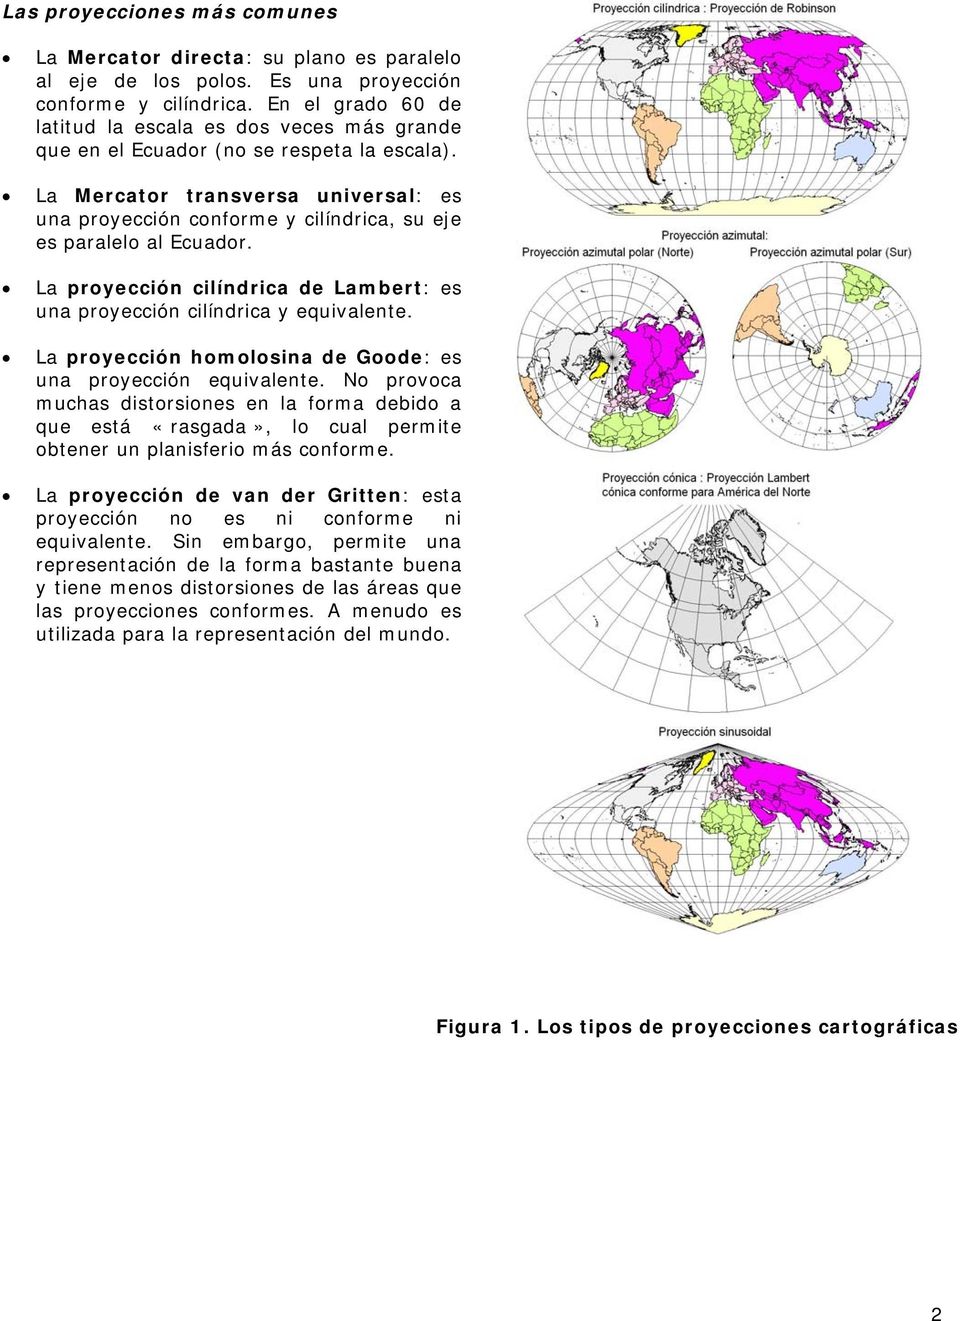 La Mercator transversa universal: es una proyección conforme y cilíndrica, su eje es paralelo al Ecuador. La proyección cilíndrica de Lambert: es una proyección cilíndrica y equivalente.